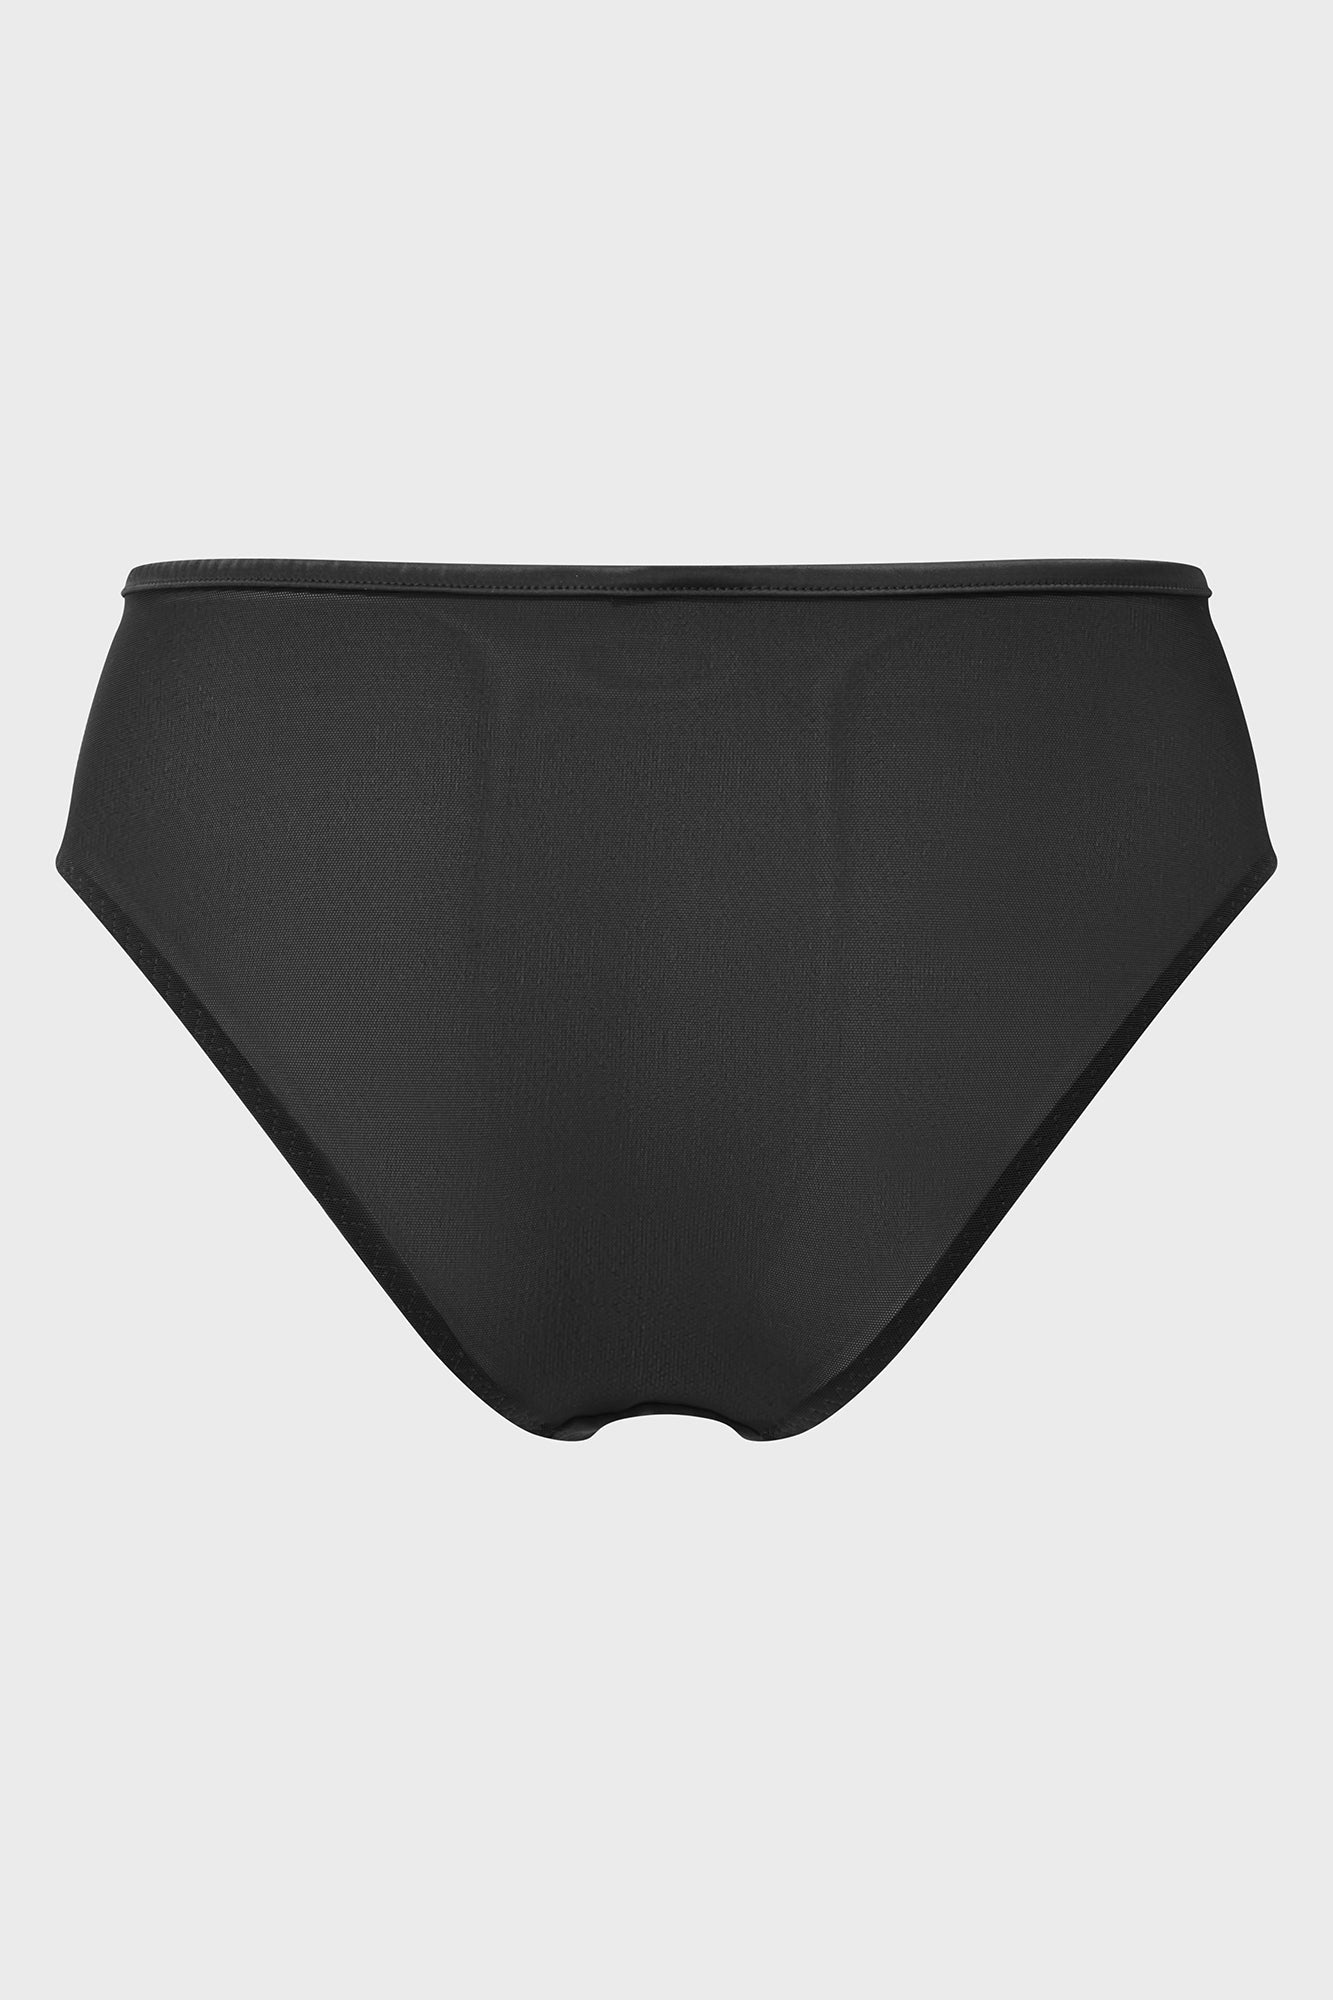 Kayser Women's Hot Pants Underwear - Black/Silver Stripe